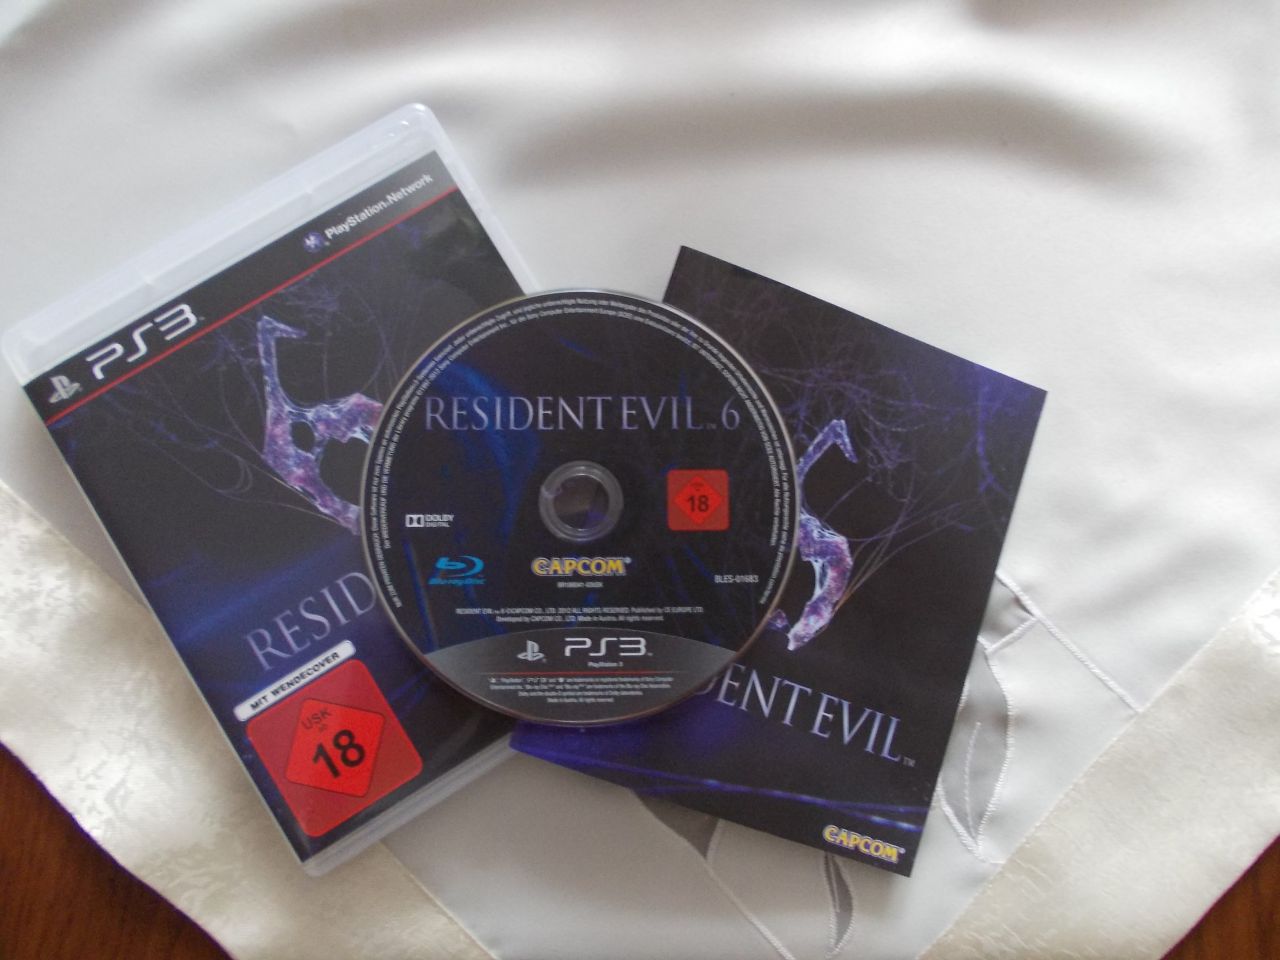 resident evil 6 pol - Resident Evil 6: Vollversion im polnischen Raum bereits im Umlauf